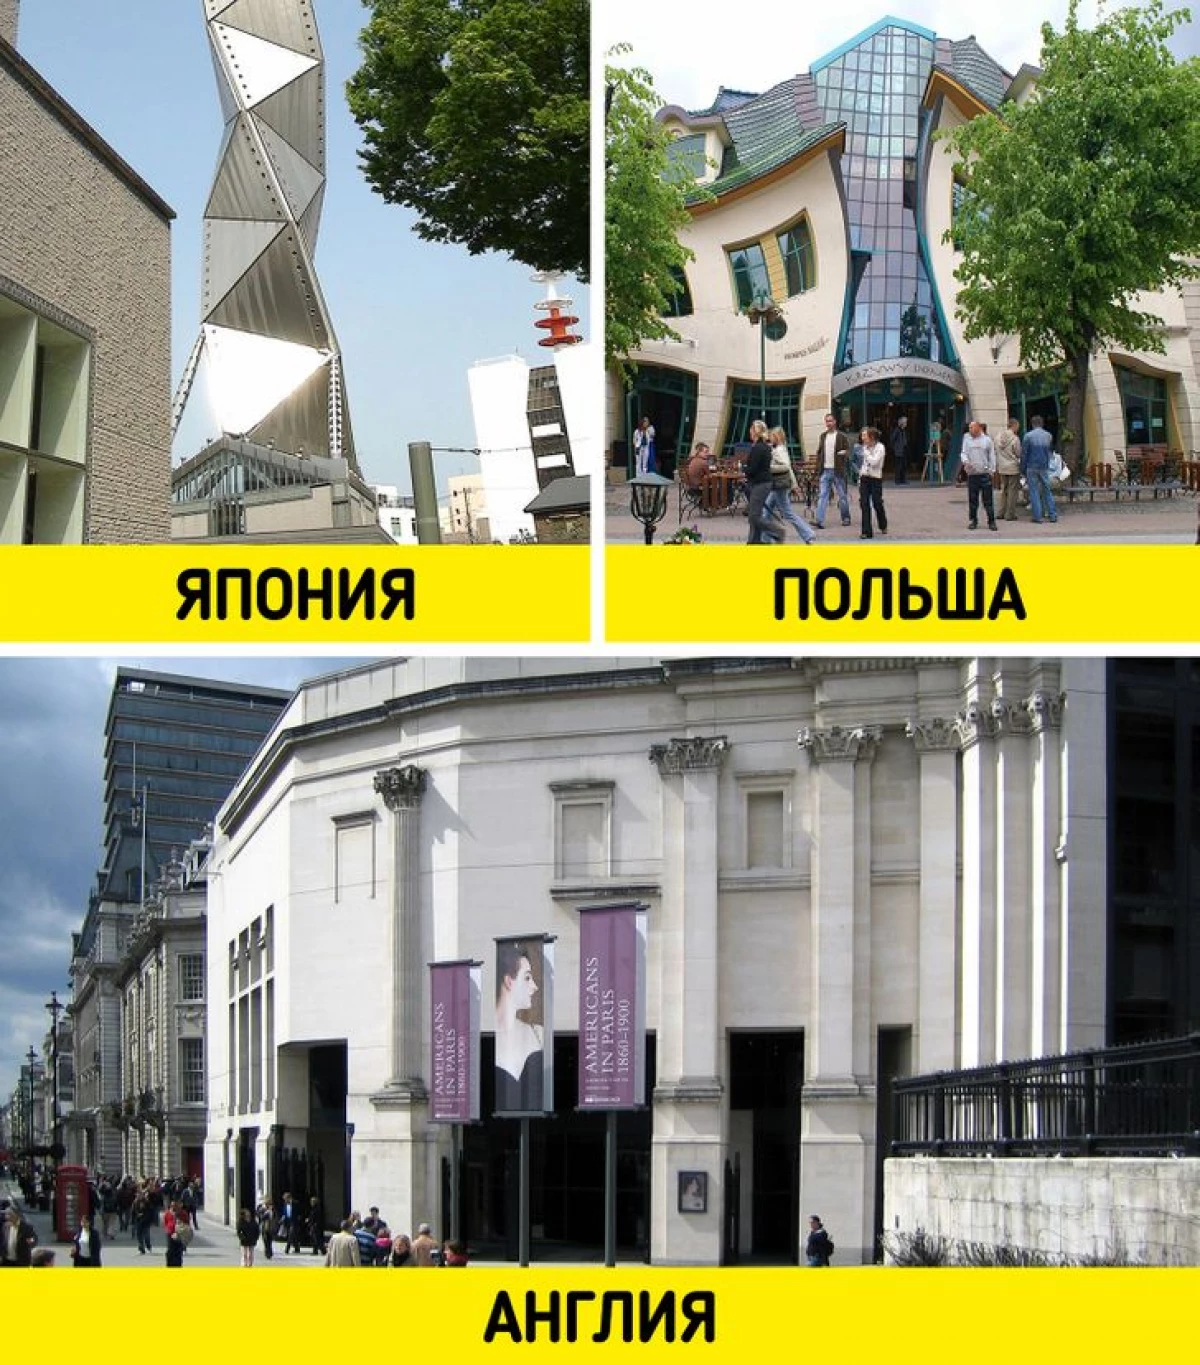 6 traditionelle architektonische Stile, die in verschiedenen Ländern völlig anders aussehen 1748_14